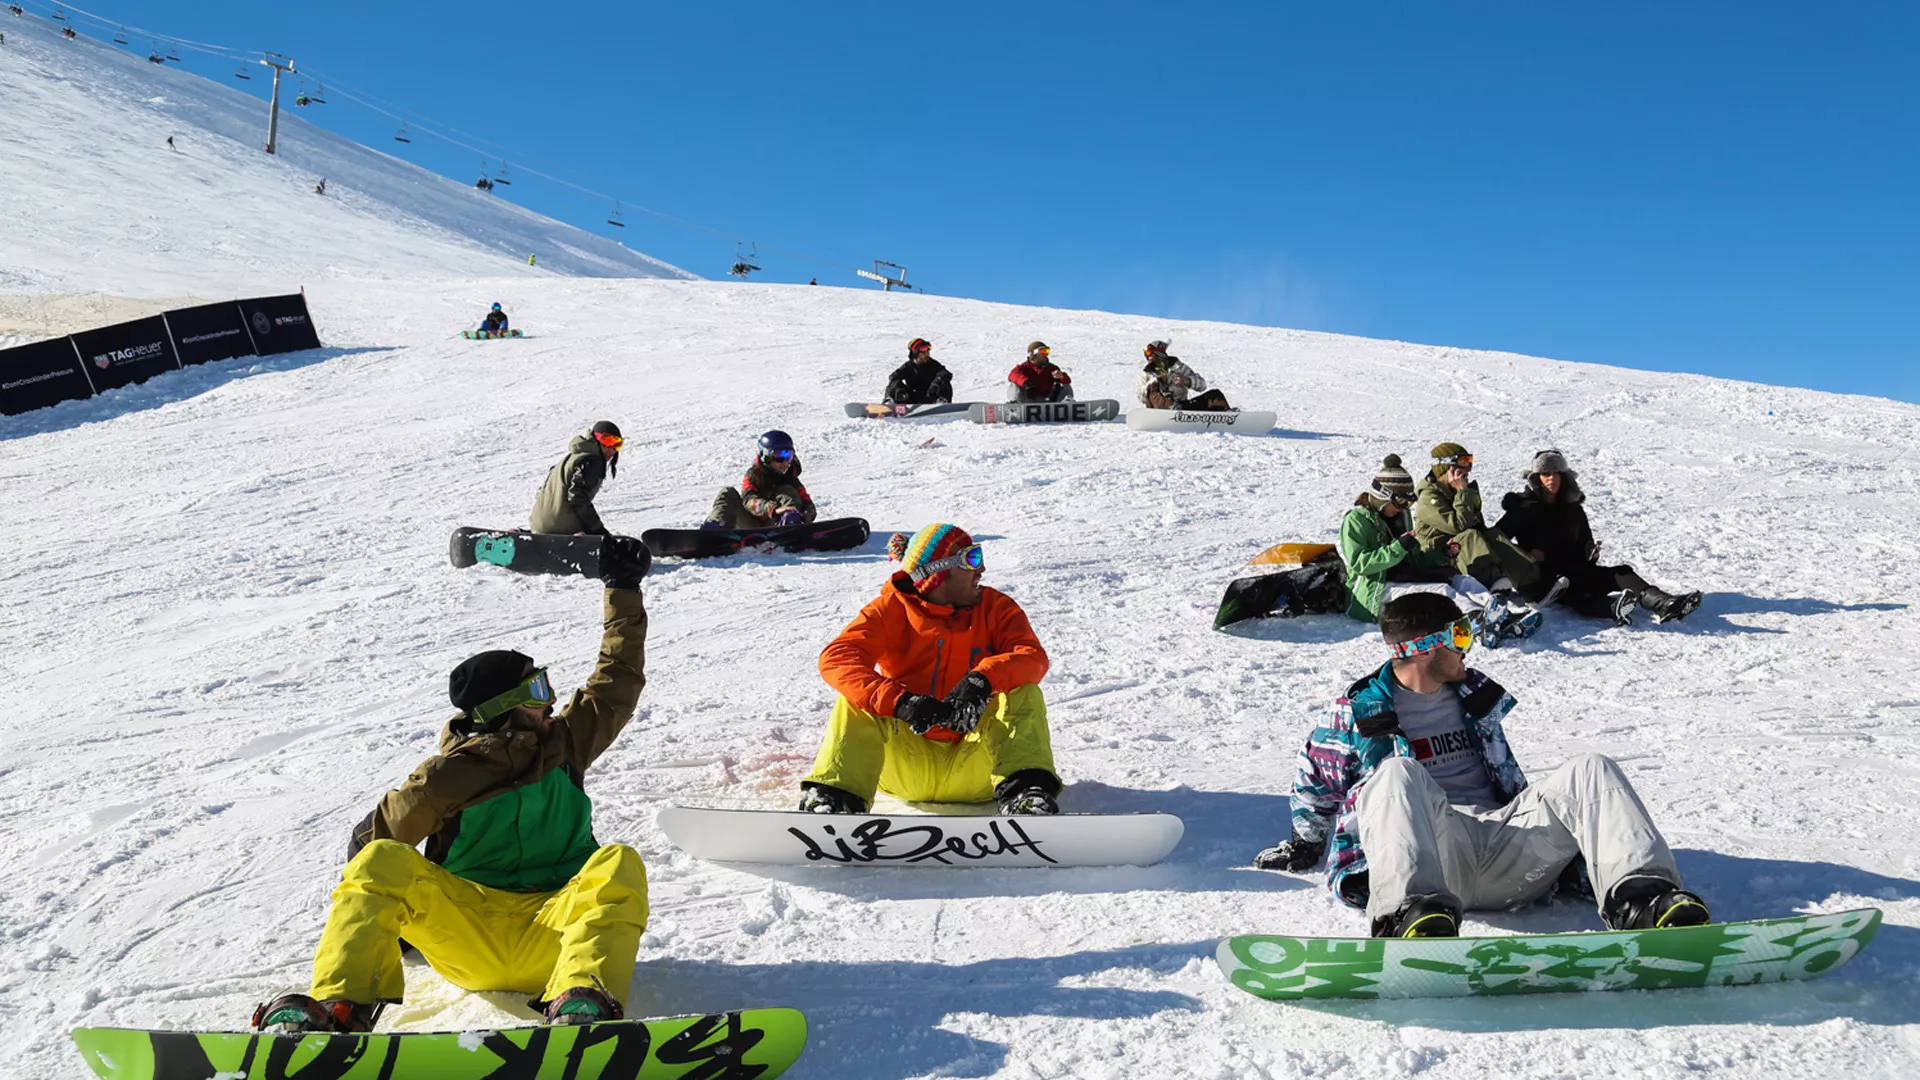 Ski Slope Darbandsar in Iran, Central Asia | Snowboarding,Skiing - Rated 0.8